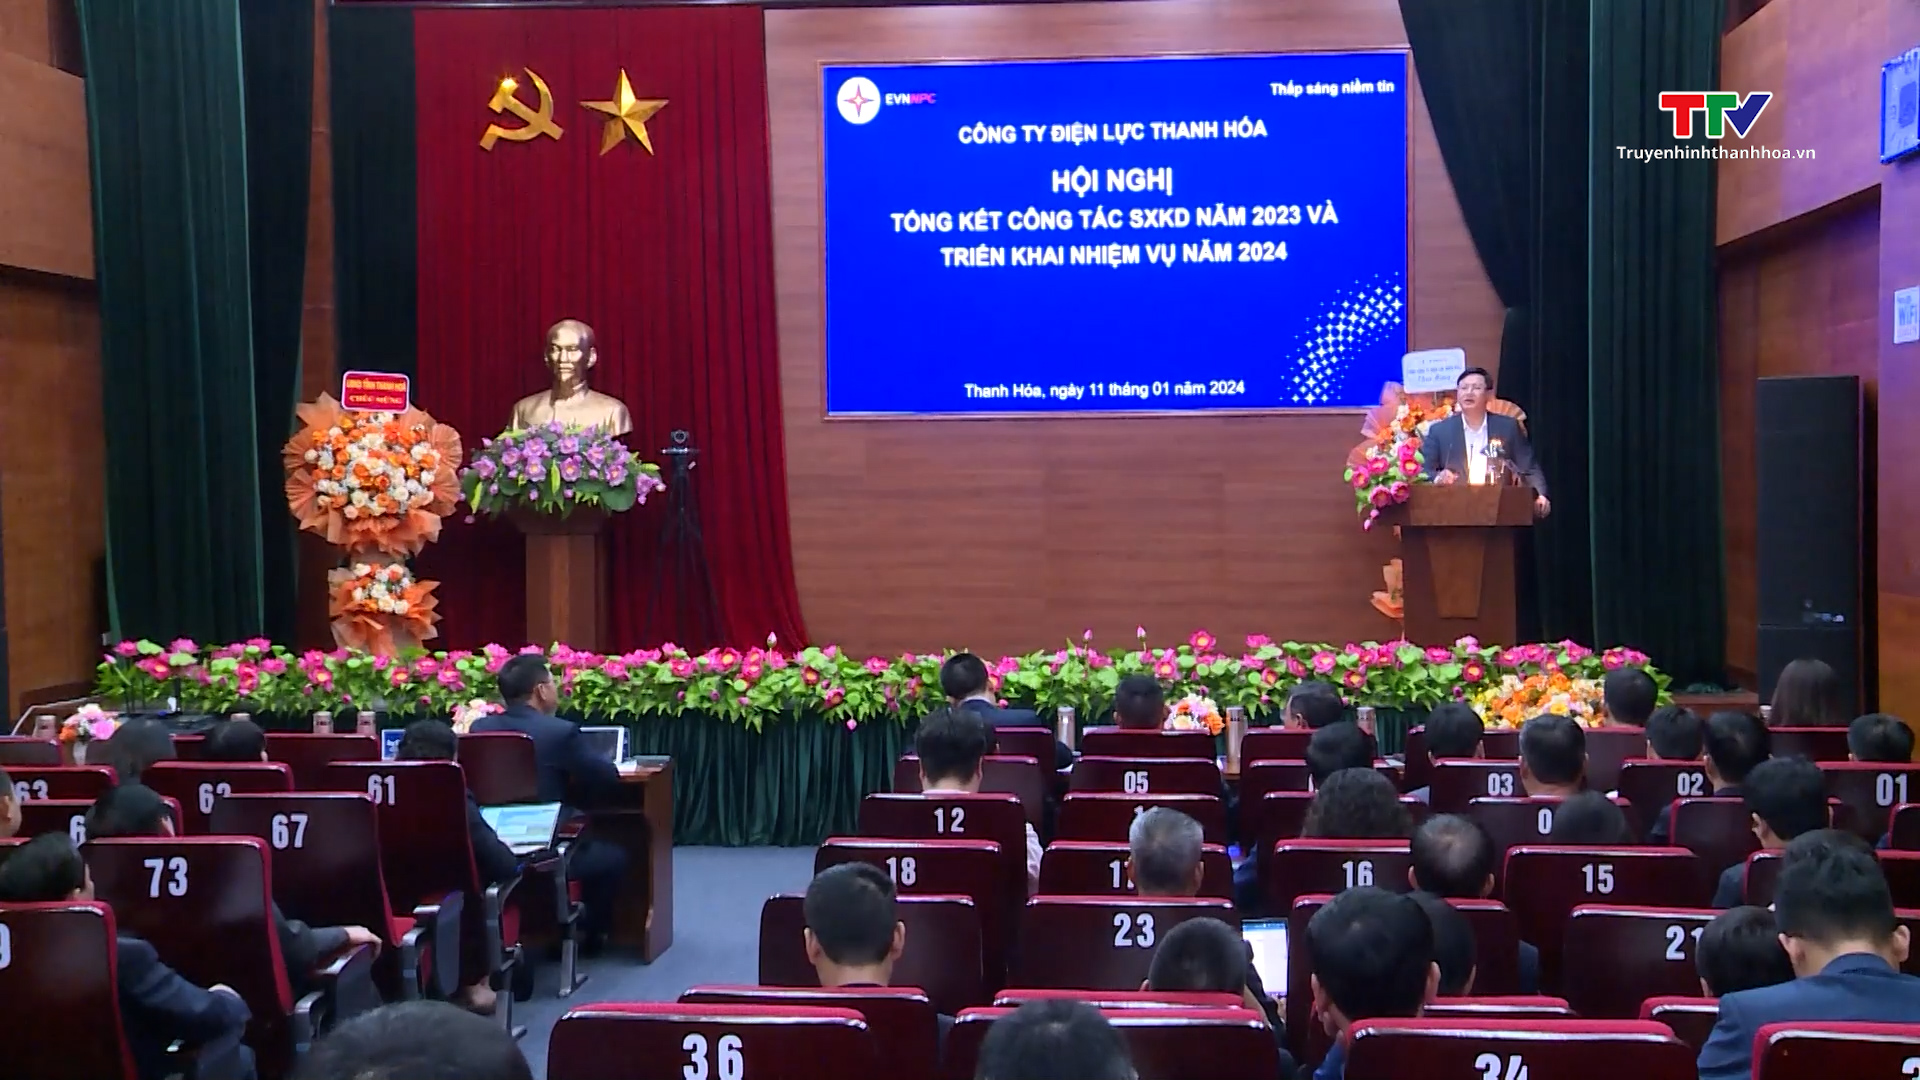 Công ty Điện lực Thanh Hoá tổng kết công tác năm 2023,
triển khai nhiệm vụ năm 2024- Ảnh 2.